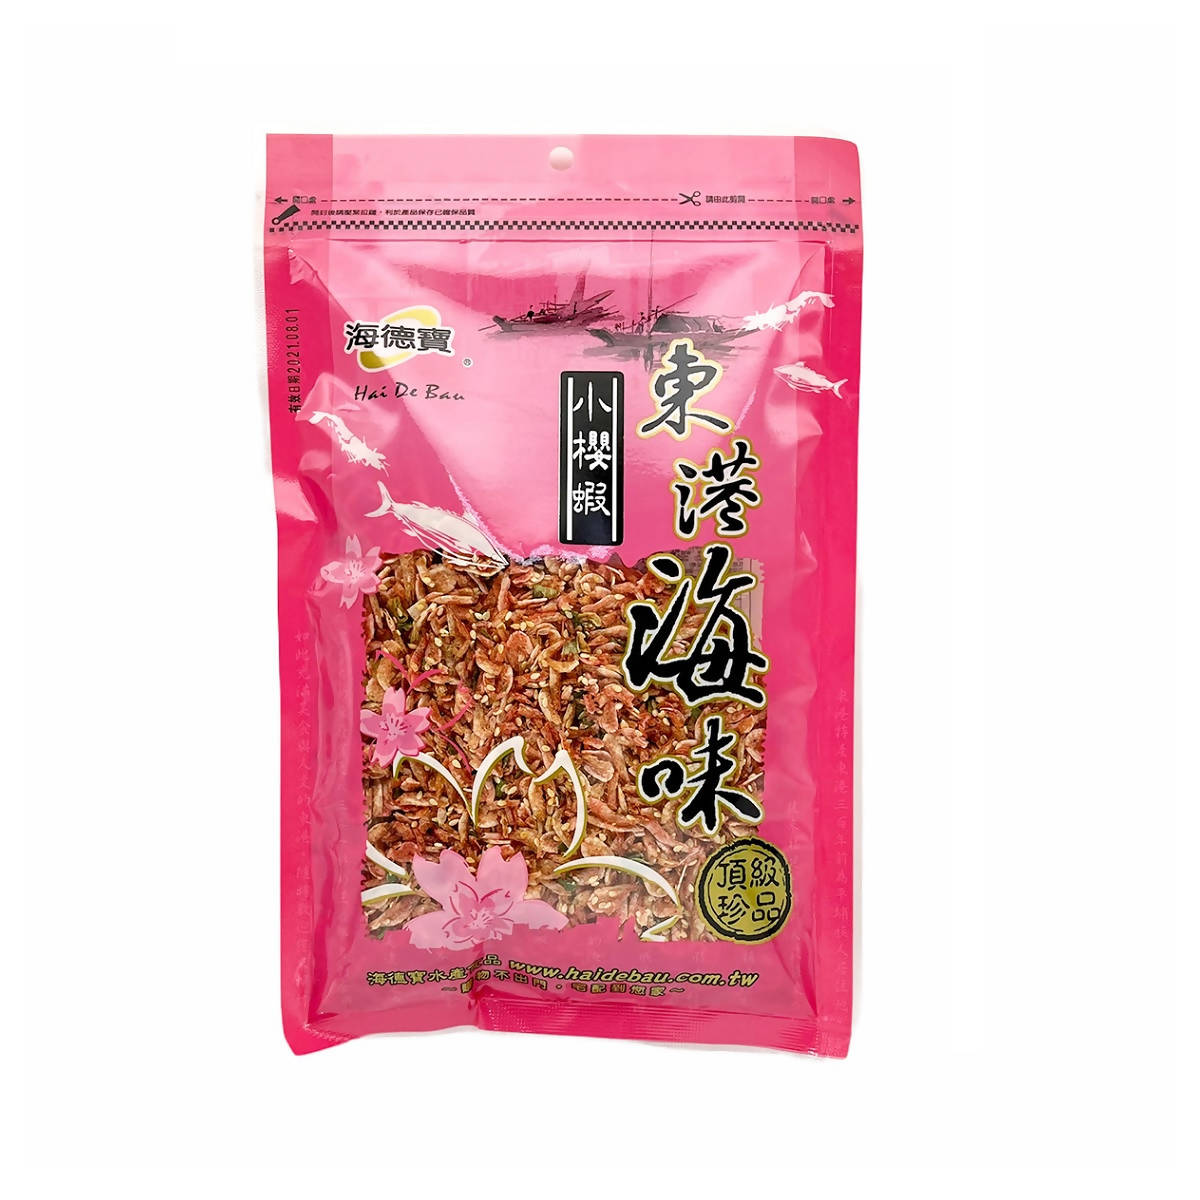 Taiwan direct mail【HAI DE BAU】HAI DE BAU Sakura Shrimp 150g 